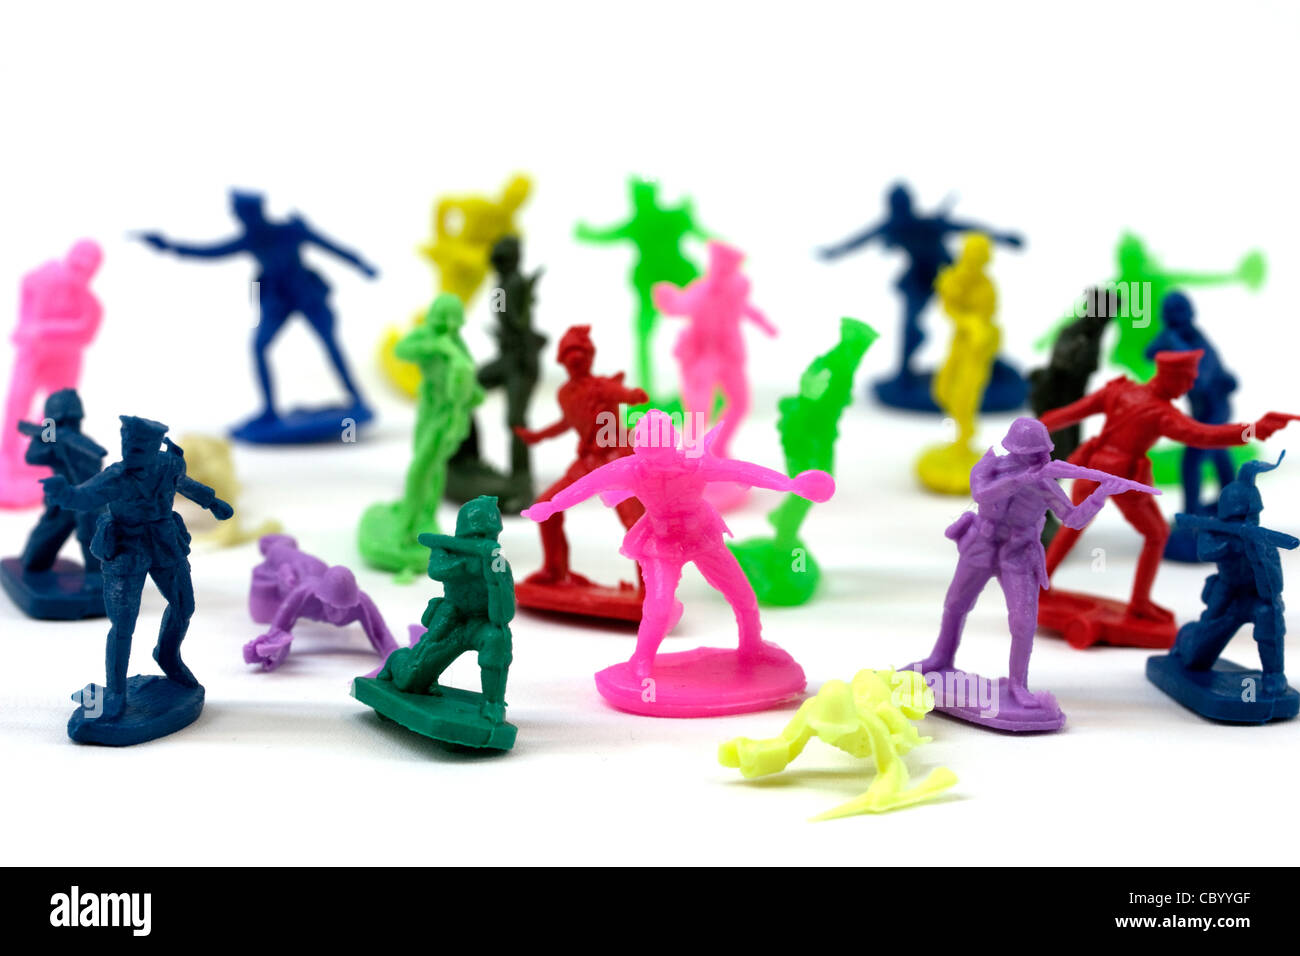 Petits soldats en plastique en plusieurs couleurs différentes Photo Stock -  Alamy